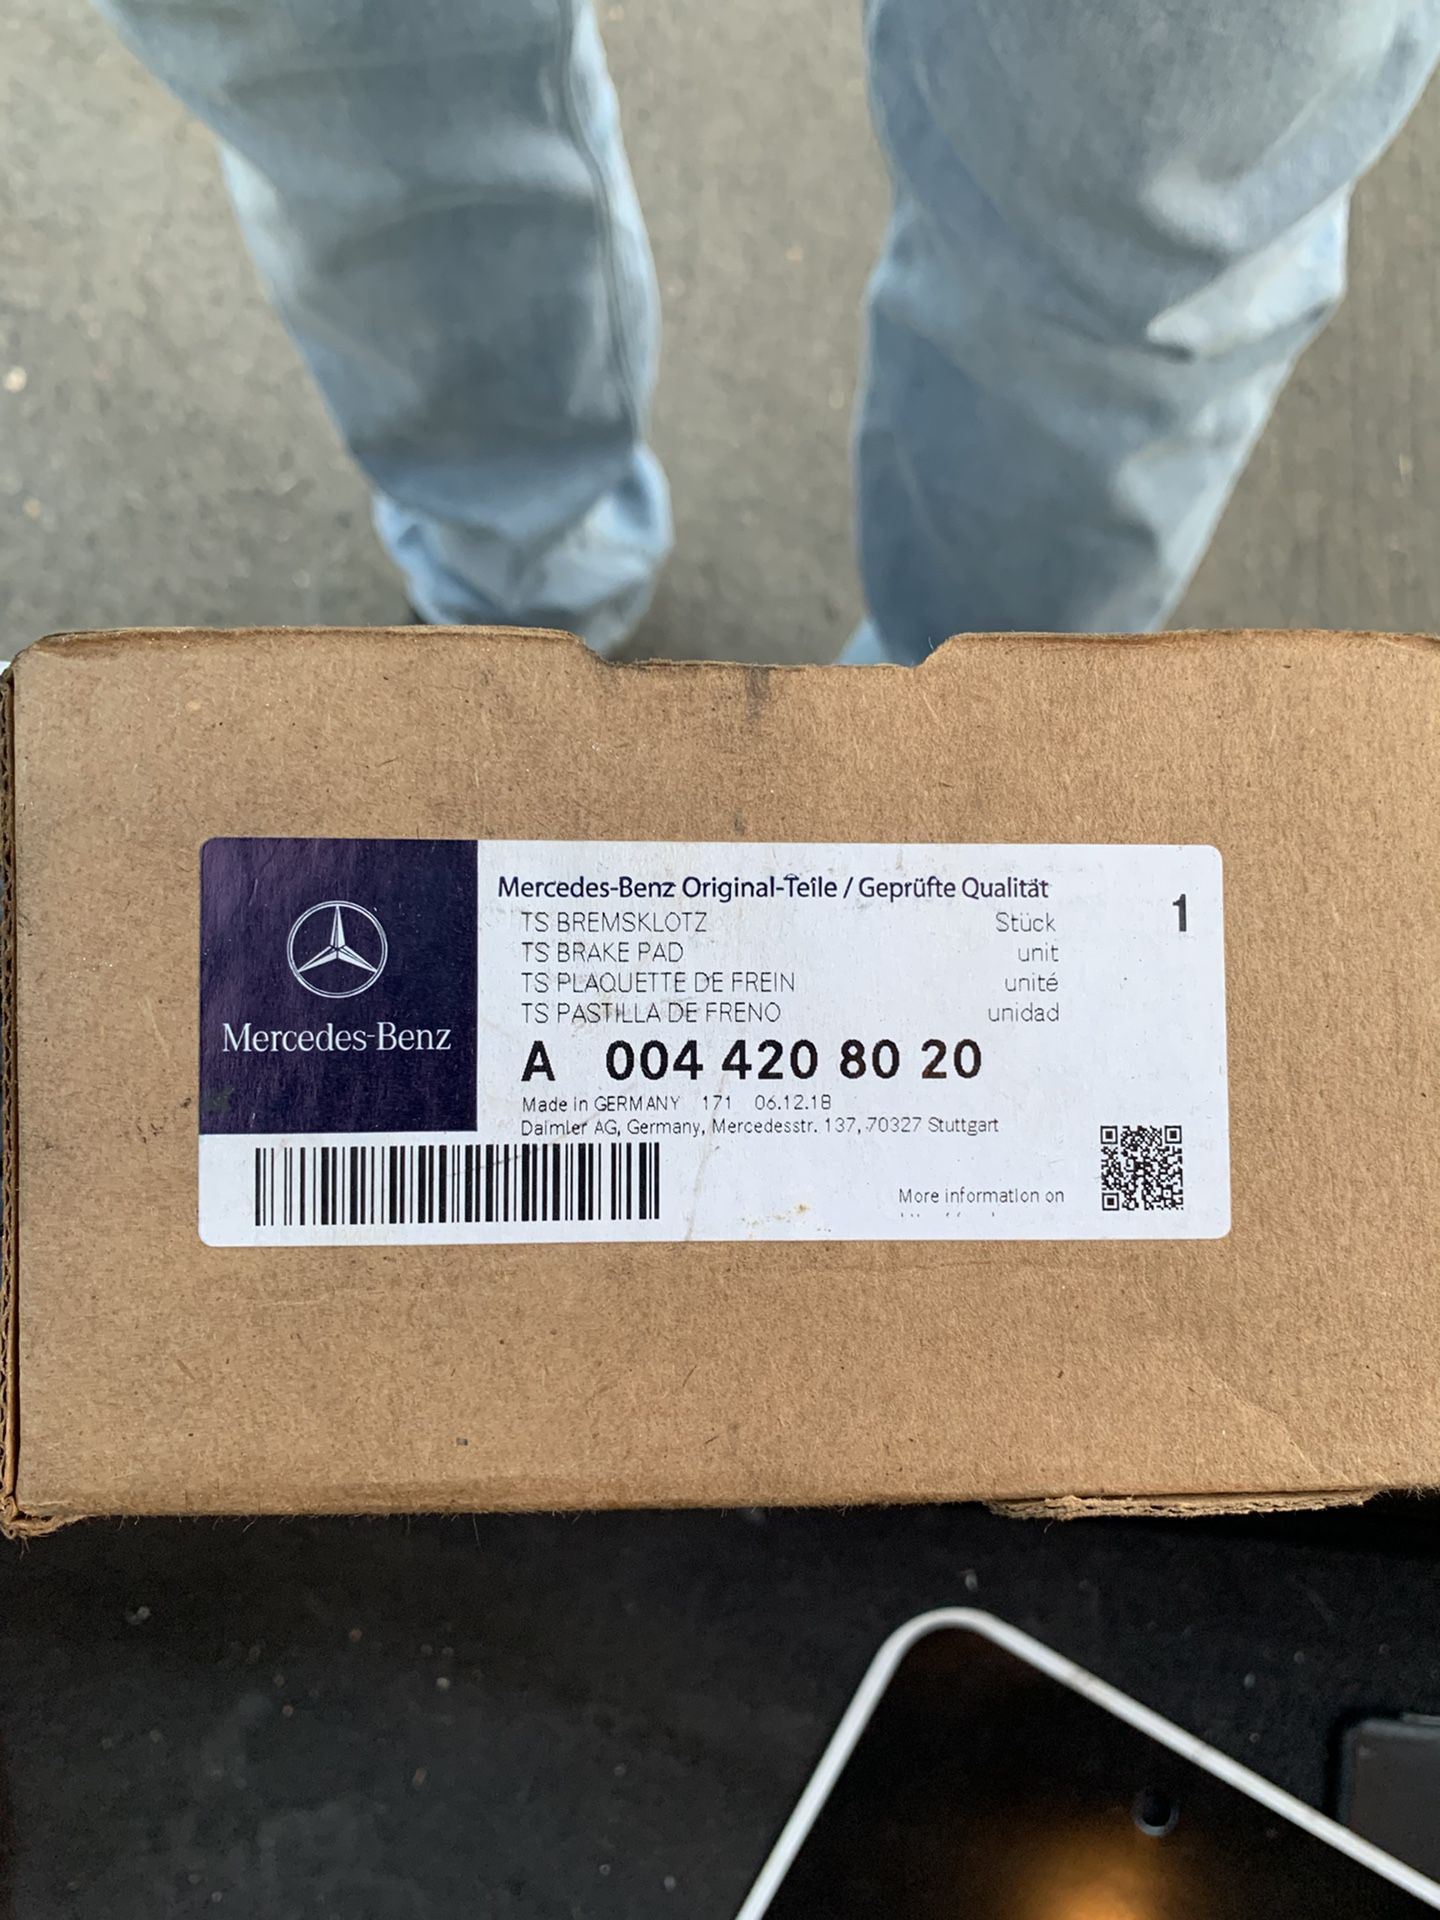 Mercedes benz parts